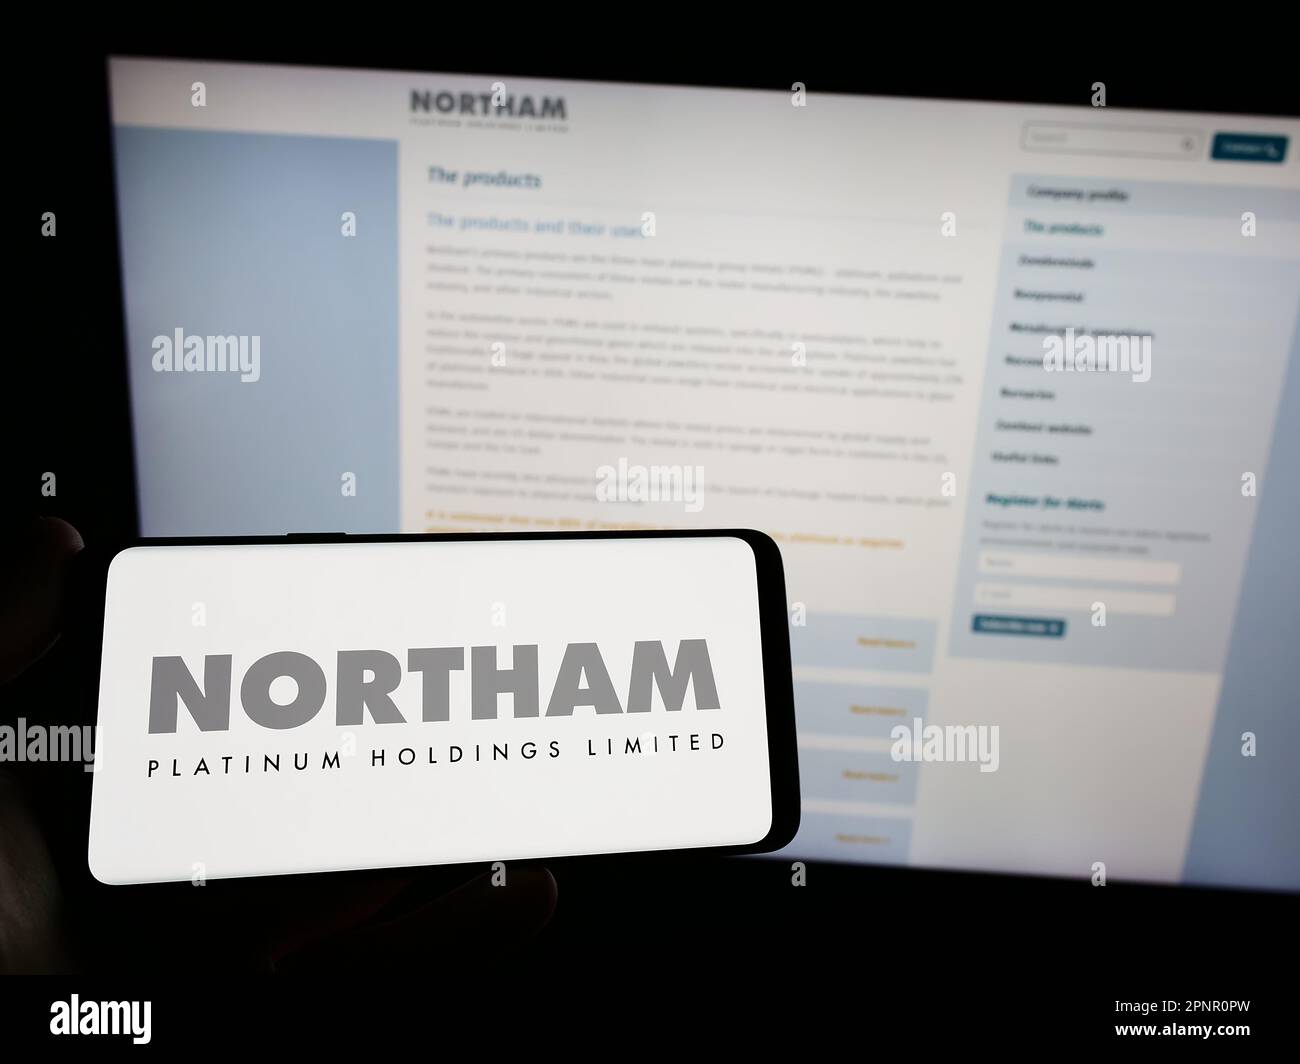 Persona che detiene uno smartphone con il logo della società Northam Platinum Holdings Limited sullo schermo di fronte al sito Web. Messa a fuoco sul display del telefono. Foto Stock